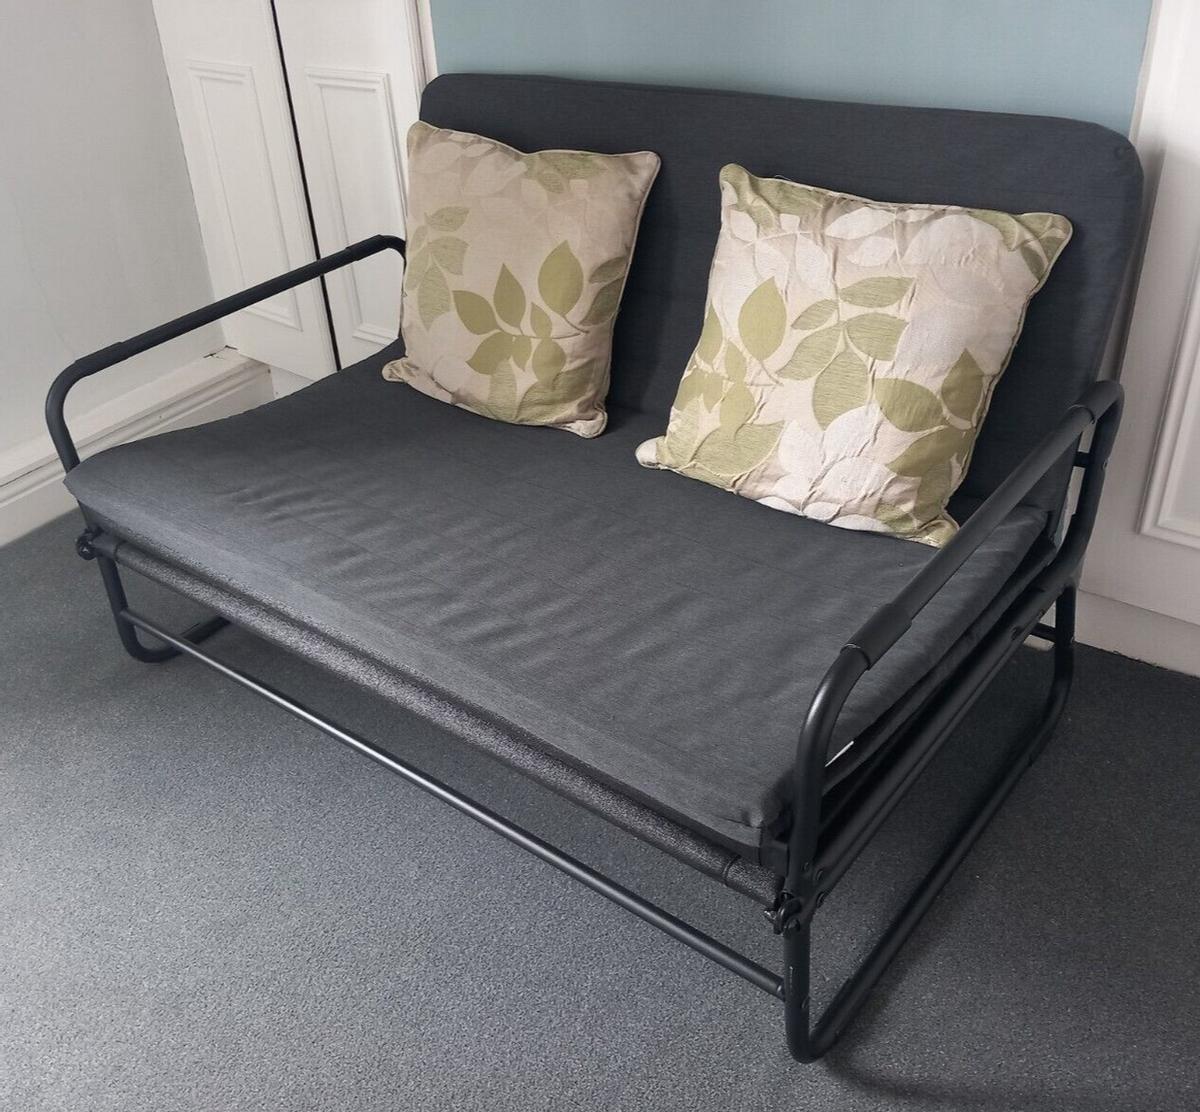 El sofá cama Hammarn, a la venta en Ikea.